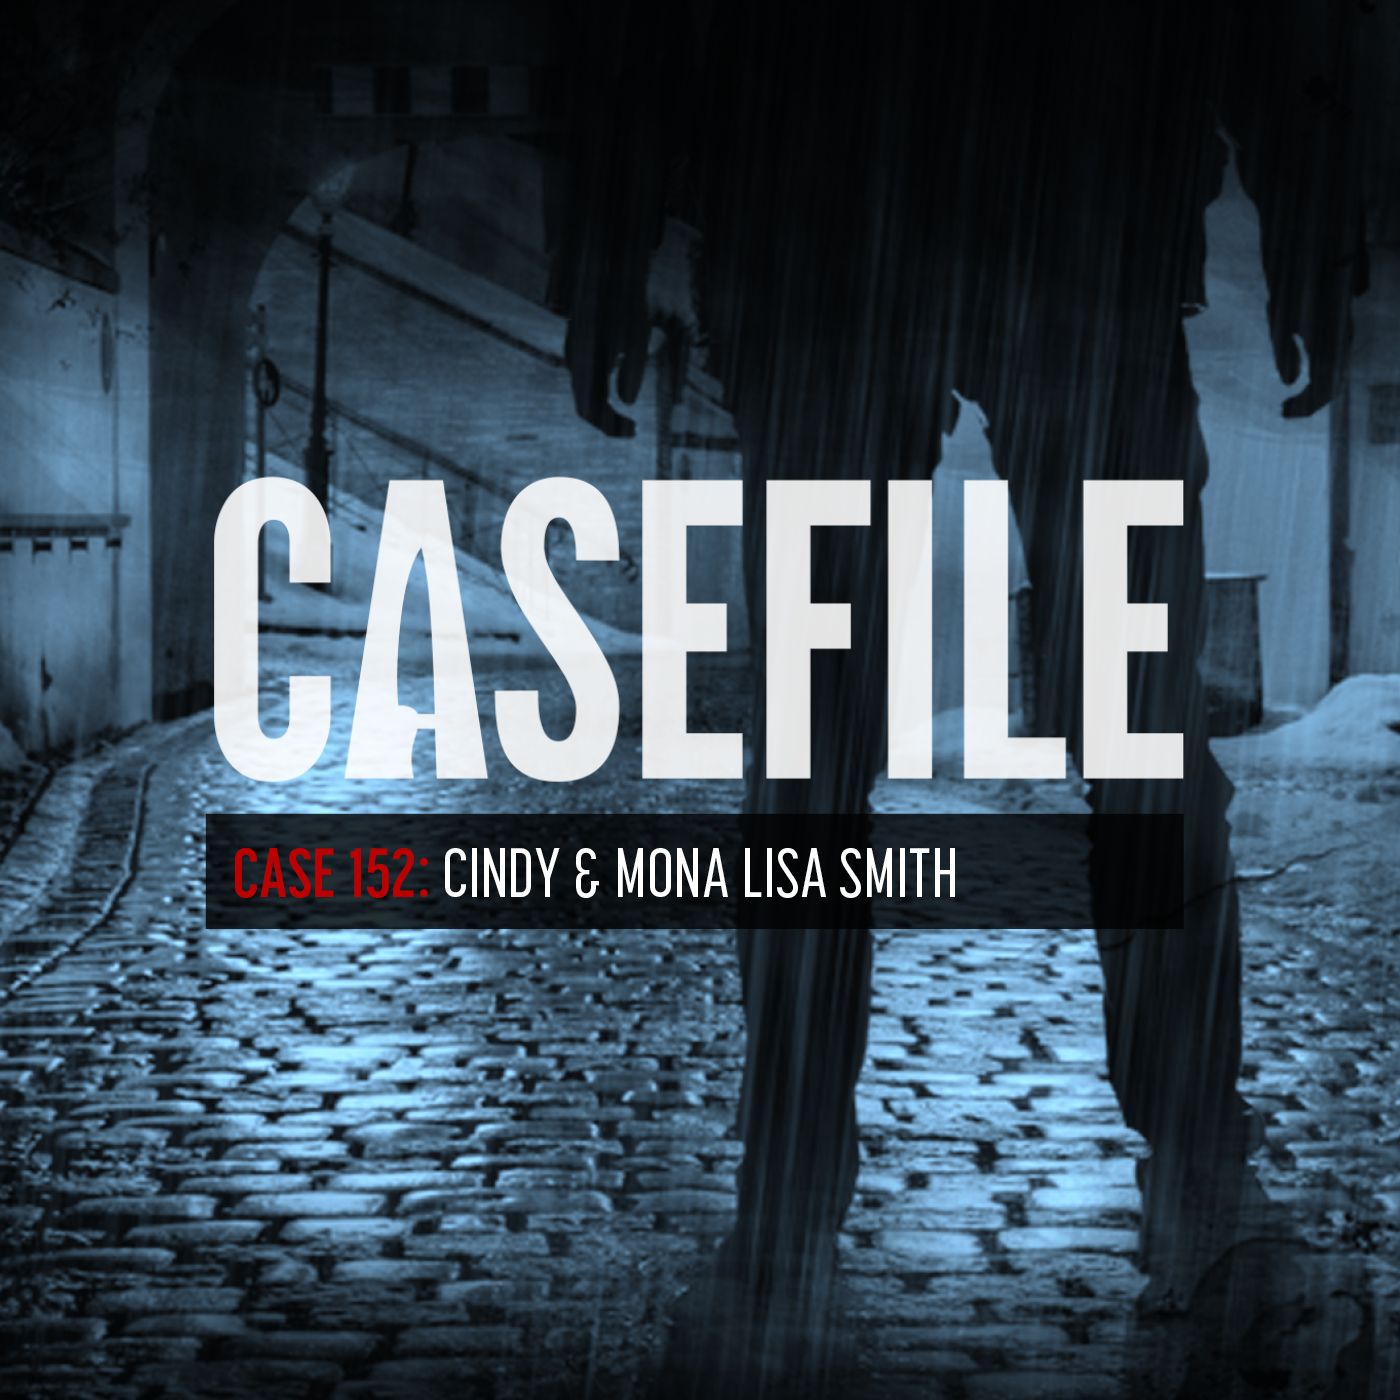 Case 152: Cindy & Mona Lisa Smith